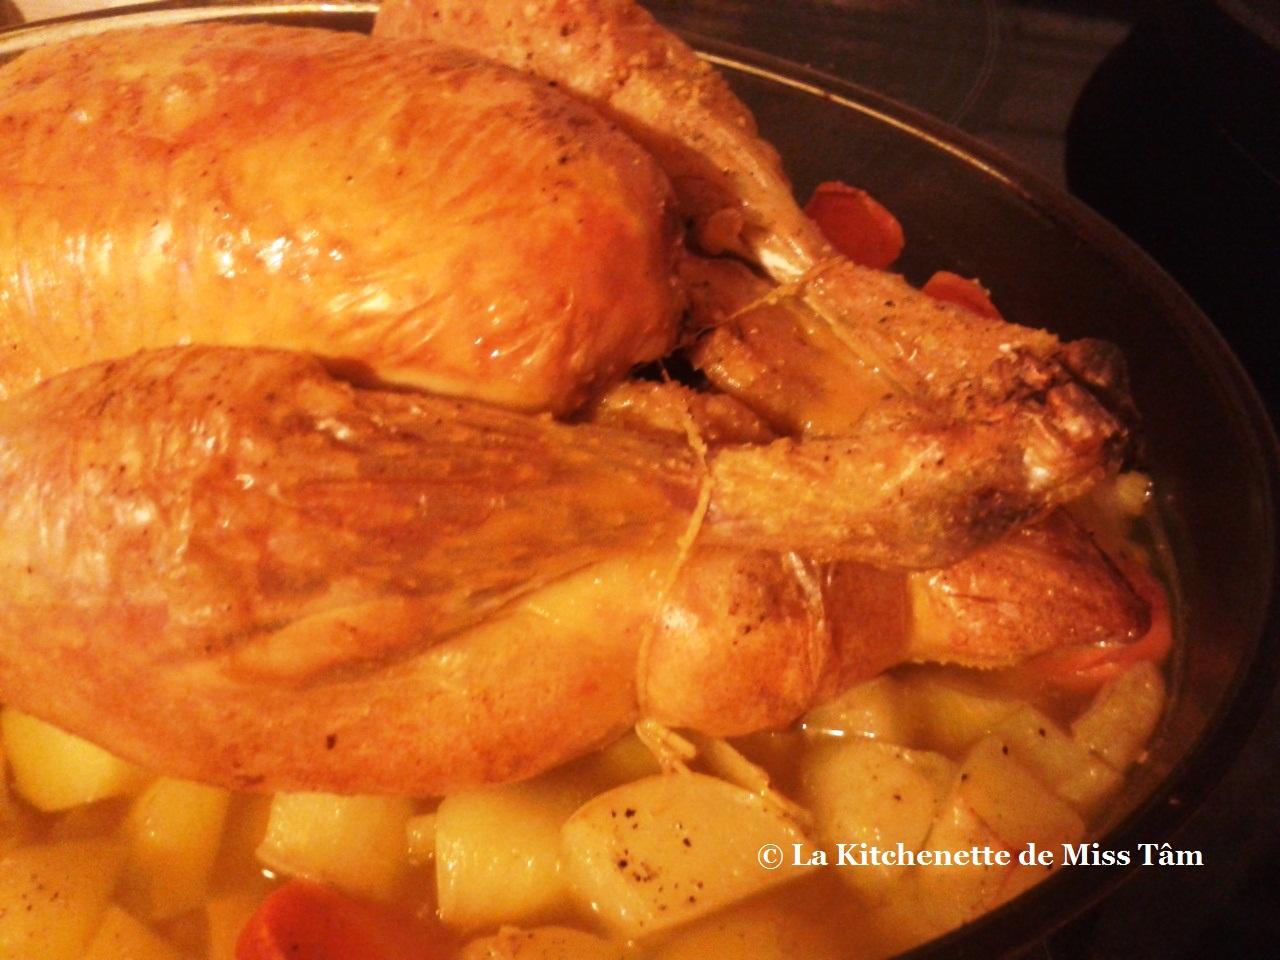 Le poulet rôti façon Jamie Oliver ou The Perfect Roast Chicken